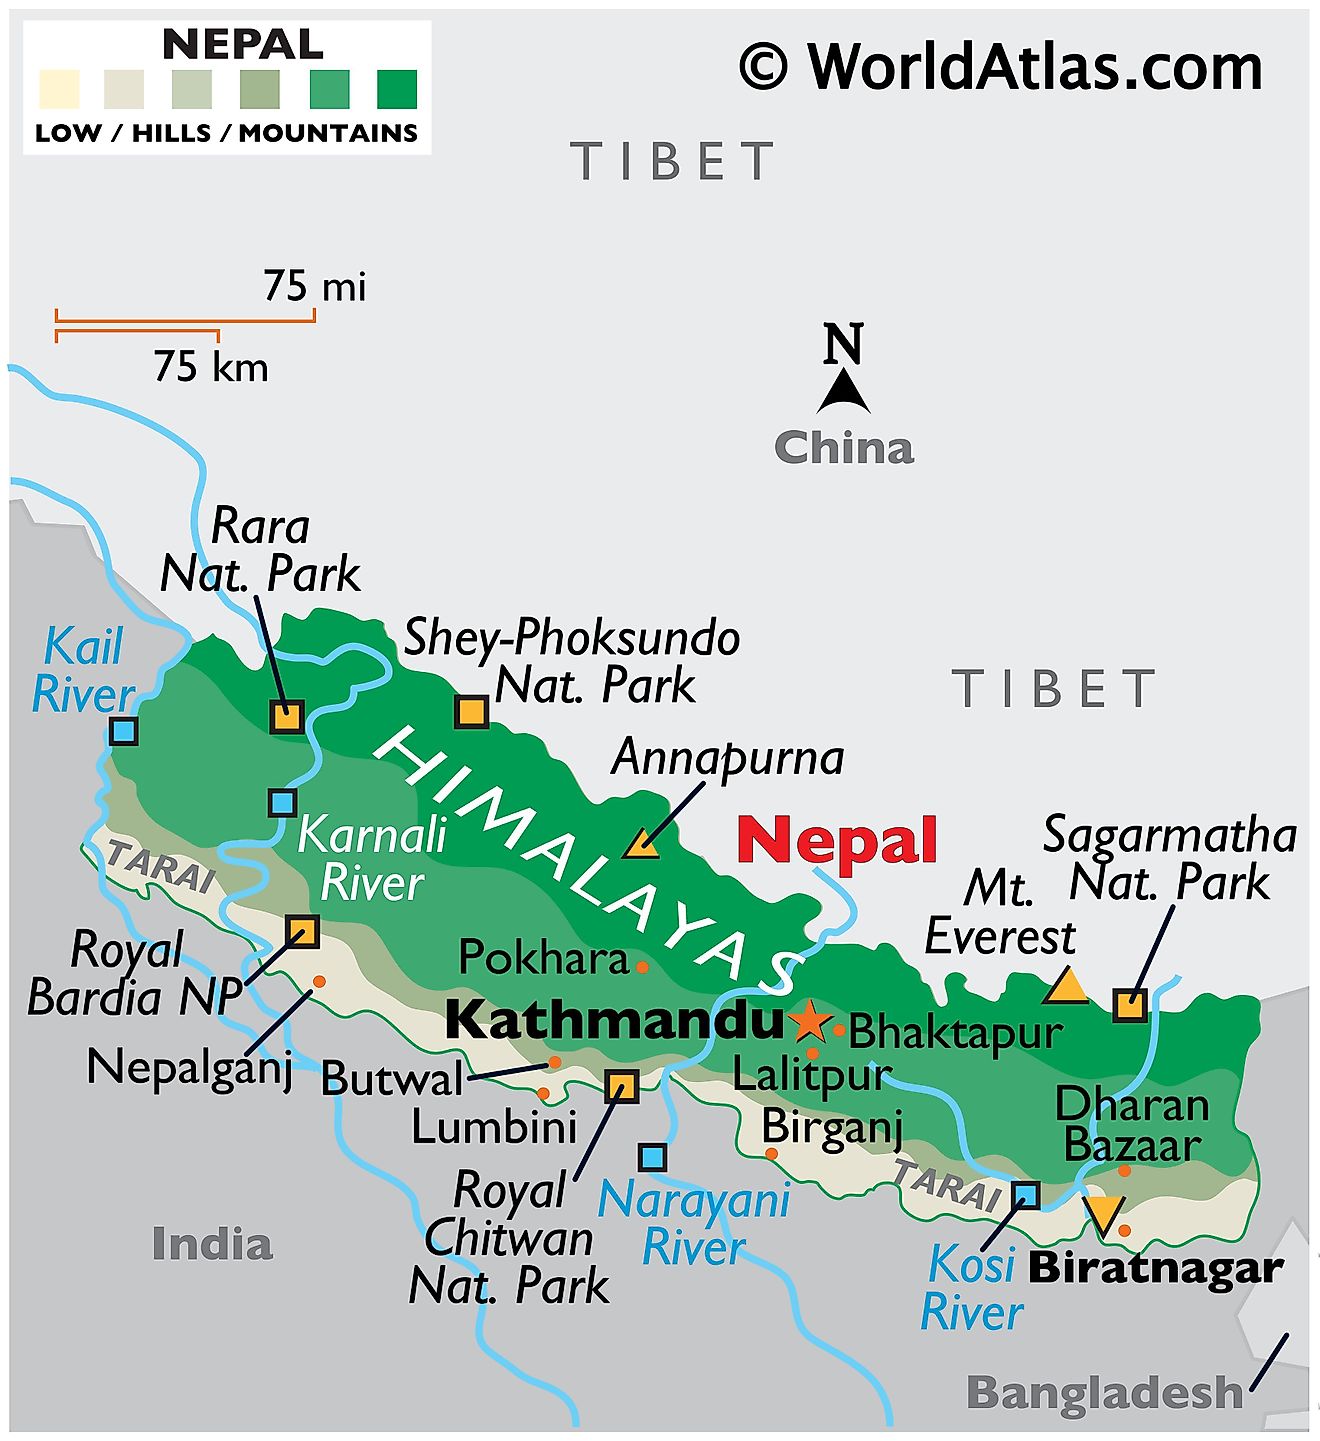 Mapa físico de Nepal que muestra los límites estatales, el relieve, el Monte Everest, los ríos principales, las ciudades importantes, los puntos extremos y los parques nacionales.